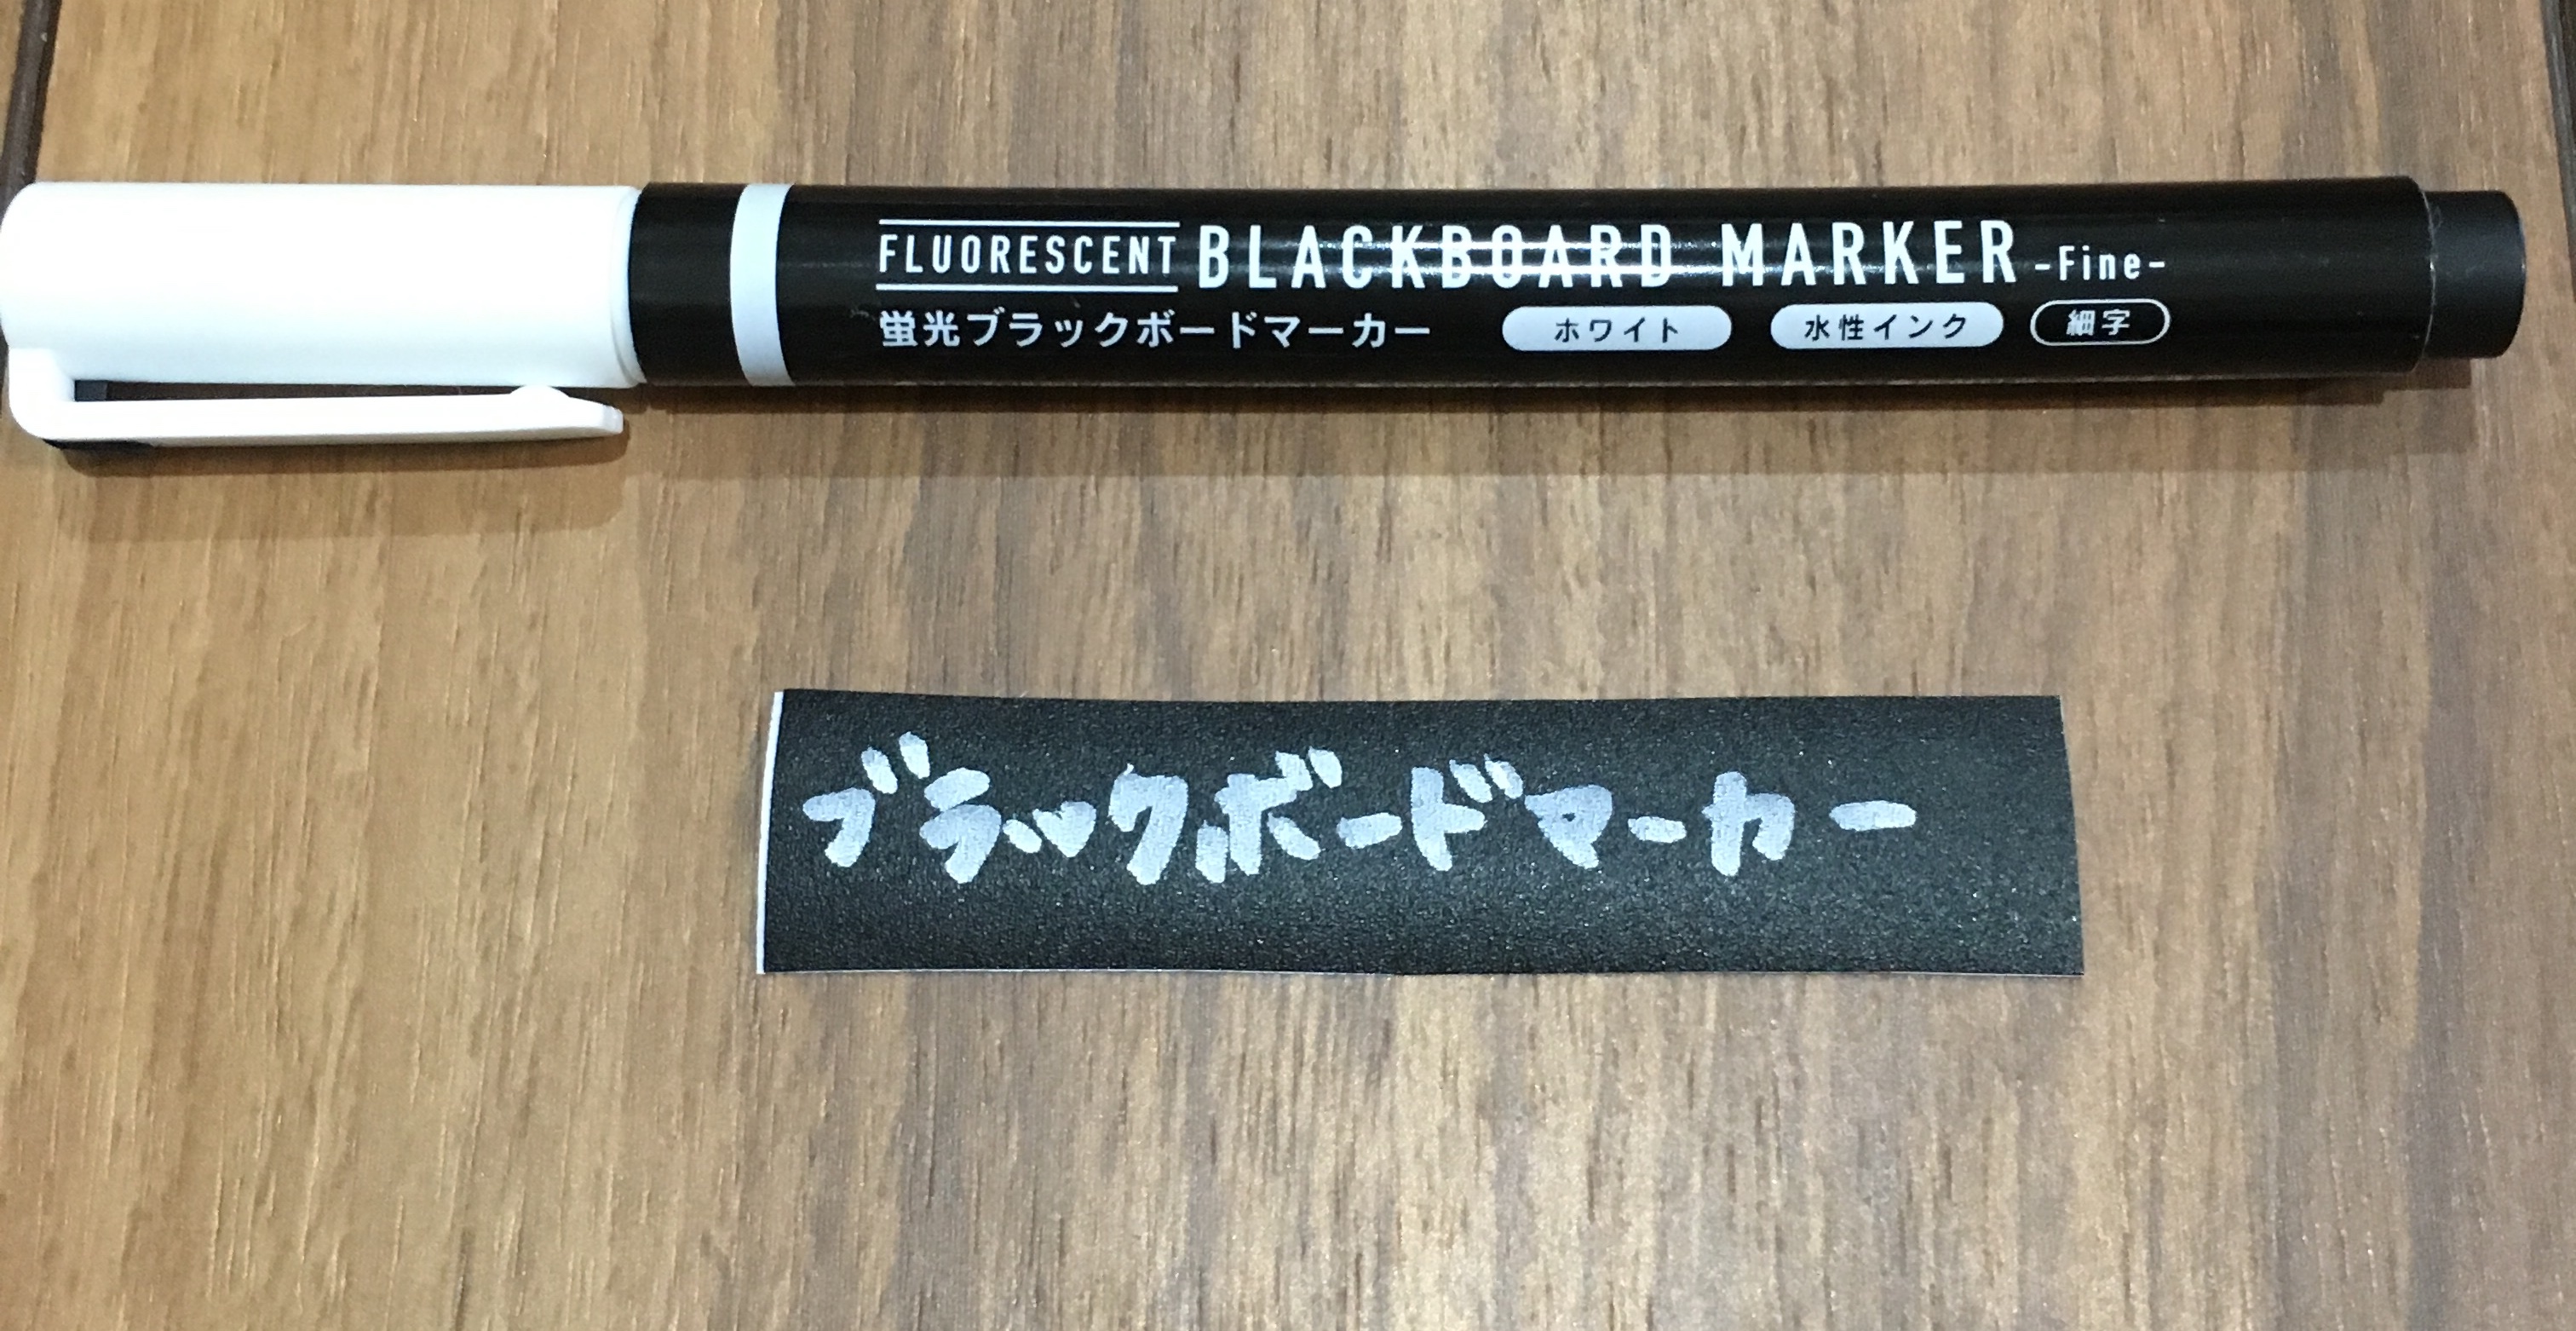 黒板シート ポスカvsブラックボードマーカー どちらが書きやすいか検証してみた Rakuratory